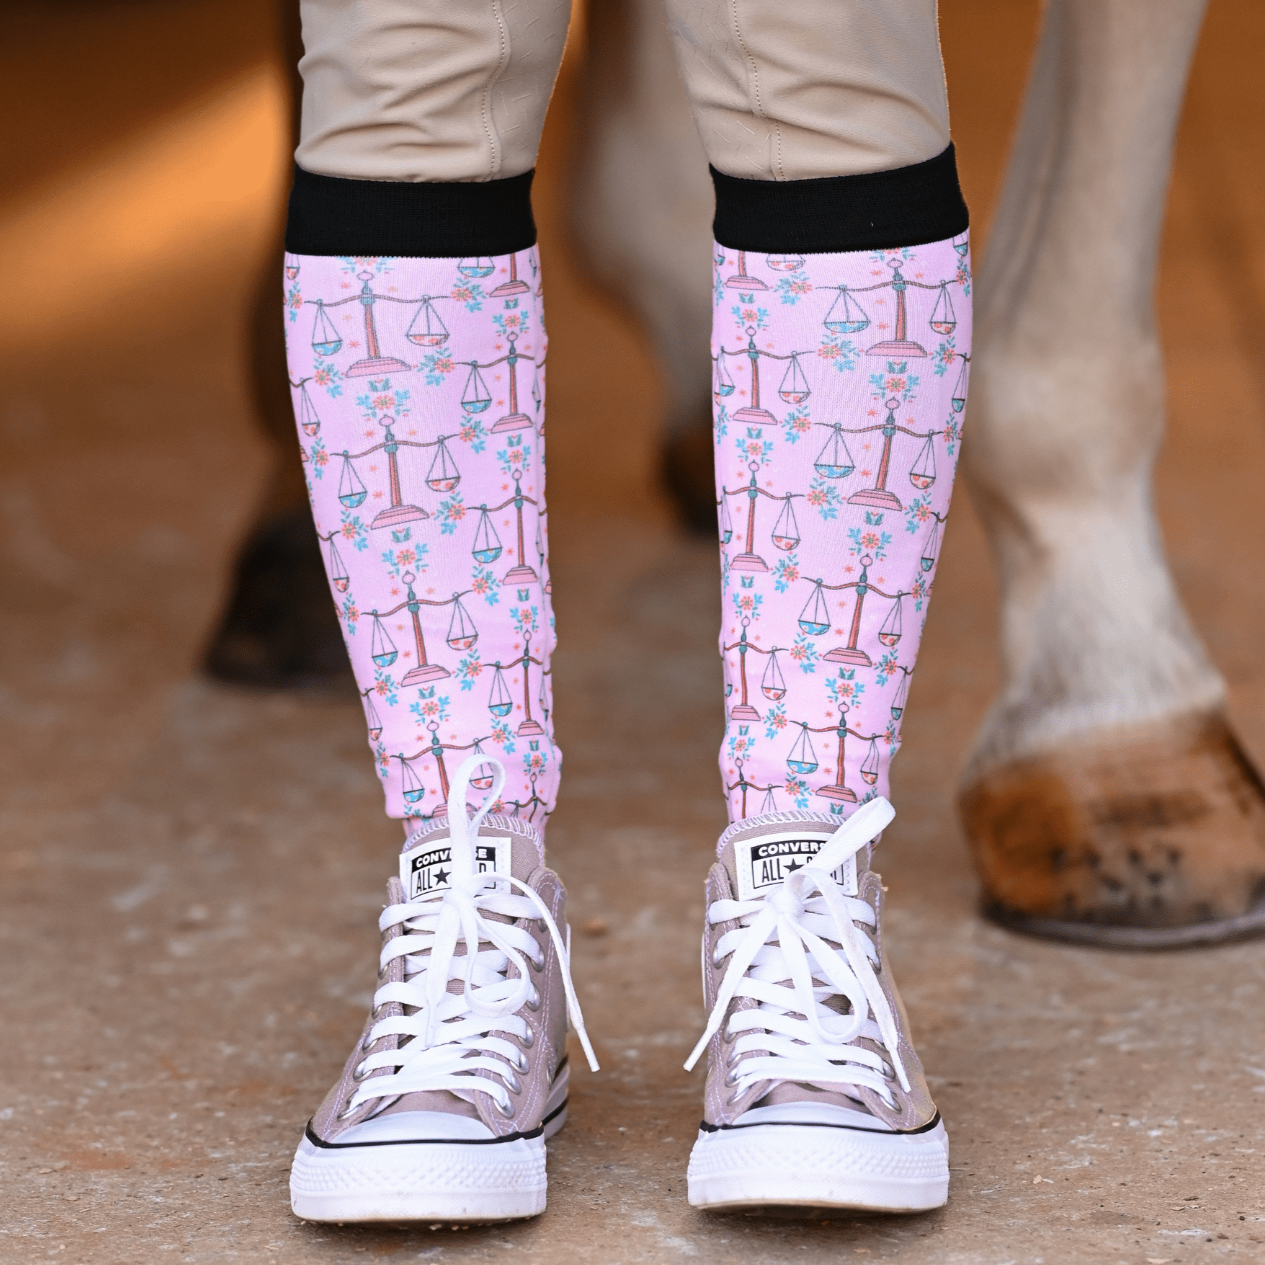 D&S LIMITED EDITION Limited Edition Limited Pretty Libra Socks equestrian boot socks boot socks thin socks riding socks pattern socks tall socks funny socks knee high socks horse socks horse show socks